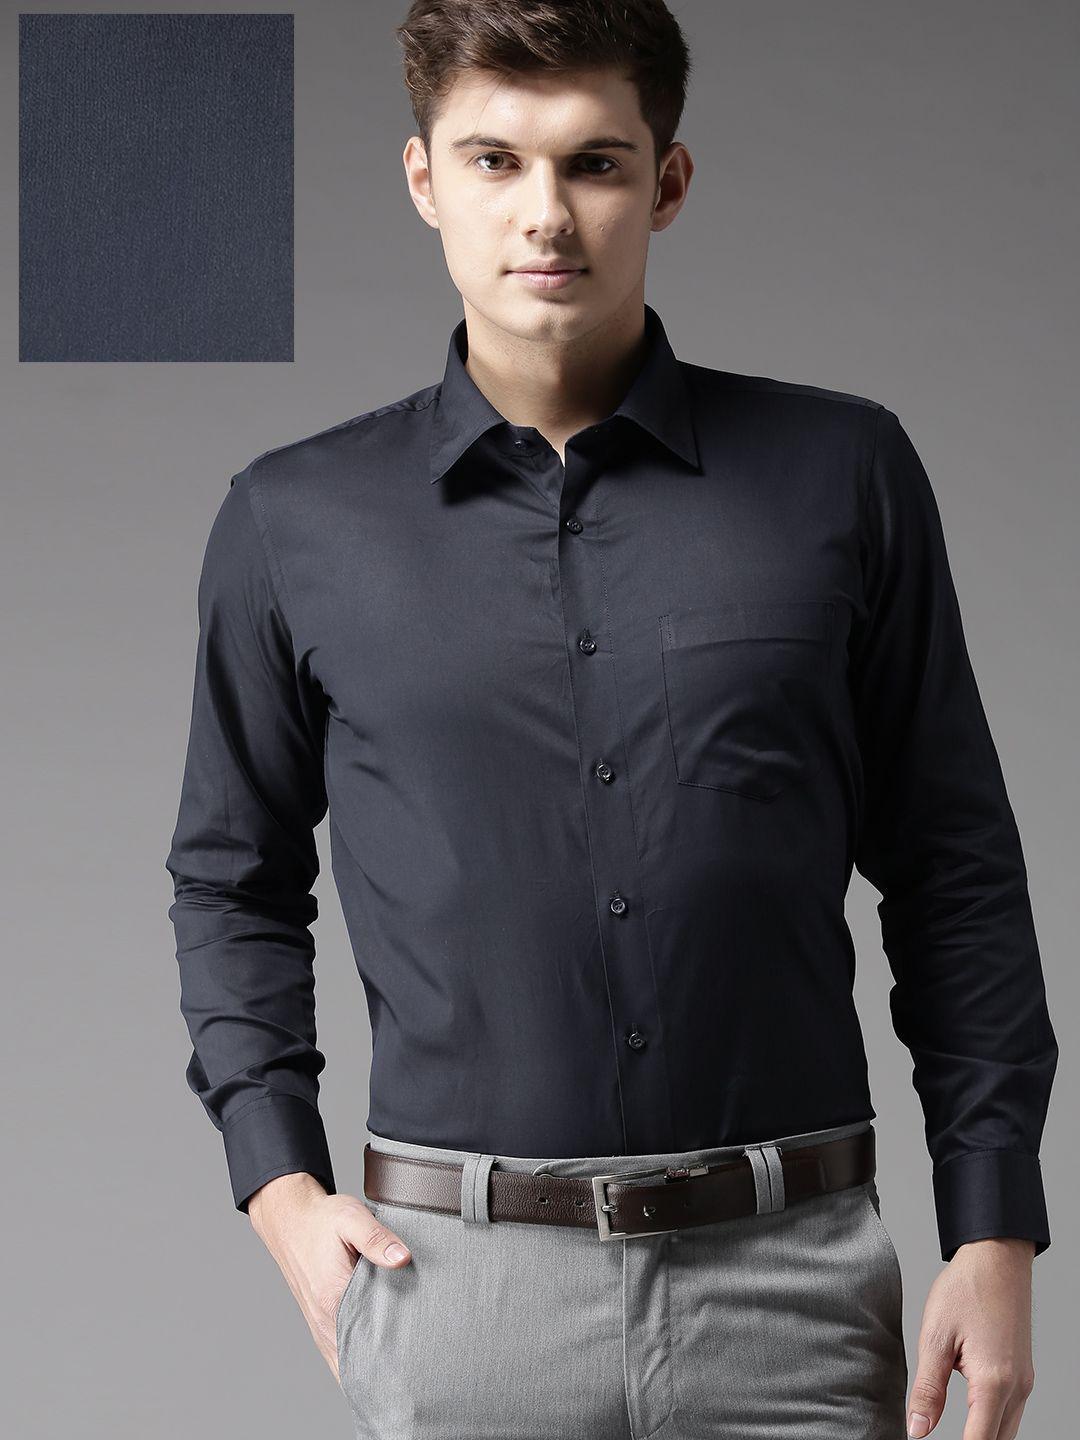 dennison men navy blue regular fit solid formal shirt